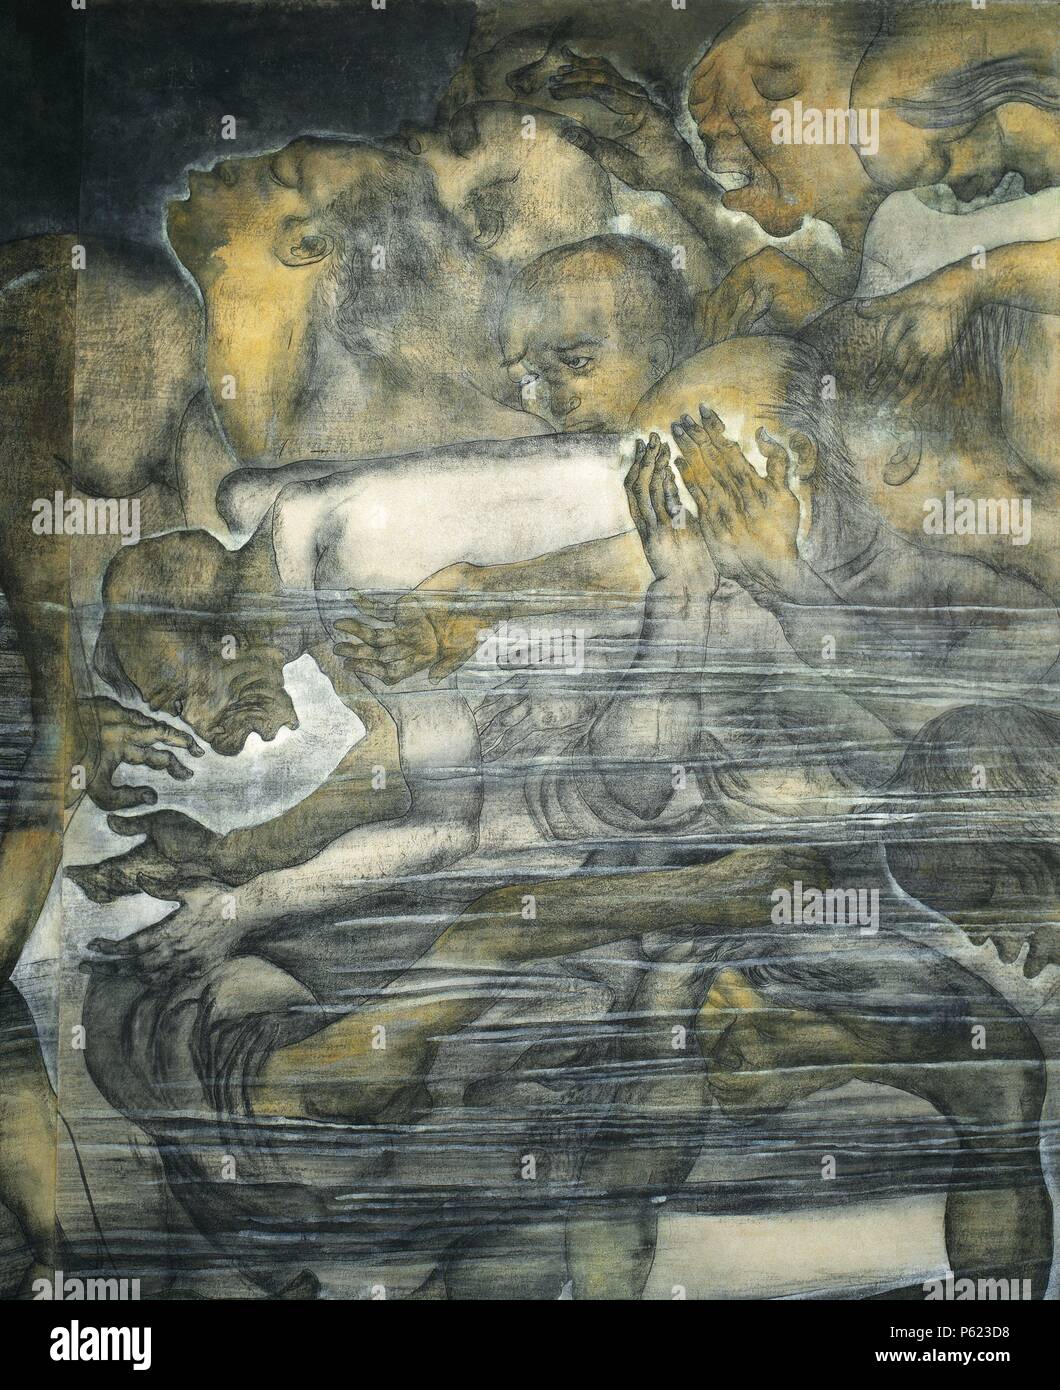 ARTE SIGLO XX. JAPON. ASIA. MARUKI, Iri. Pintor japonés que sufrió la tragedia de Hiroshima. 'AGUA'. Detalle de un biombo de 8 x 3 m., que representa las escenas vividas algunos instantes después de la explosión de la bomba atómica sobre la ciudad. Stock Photo